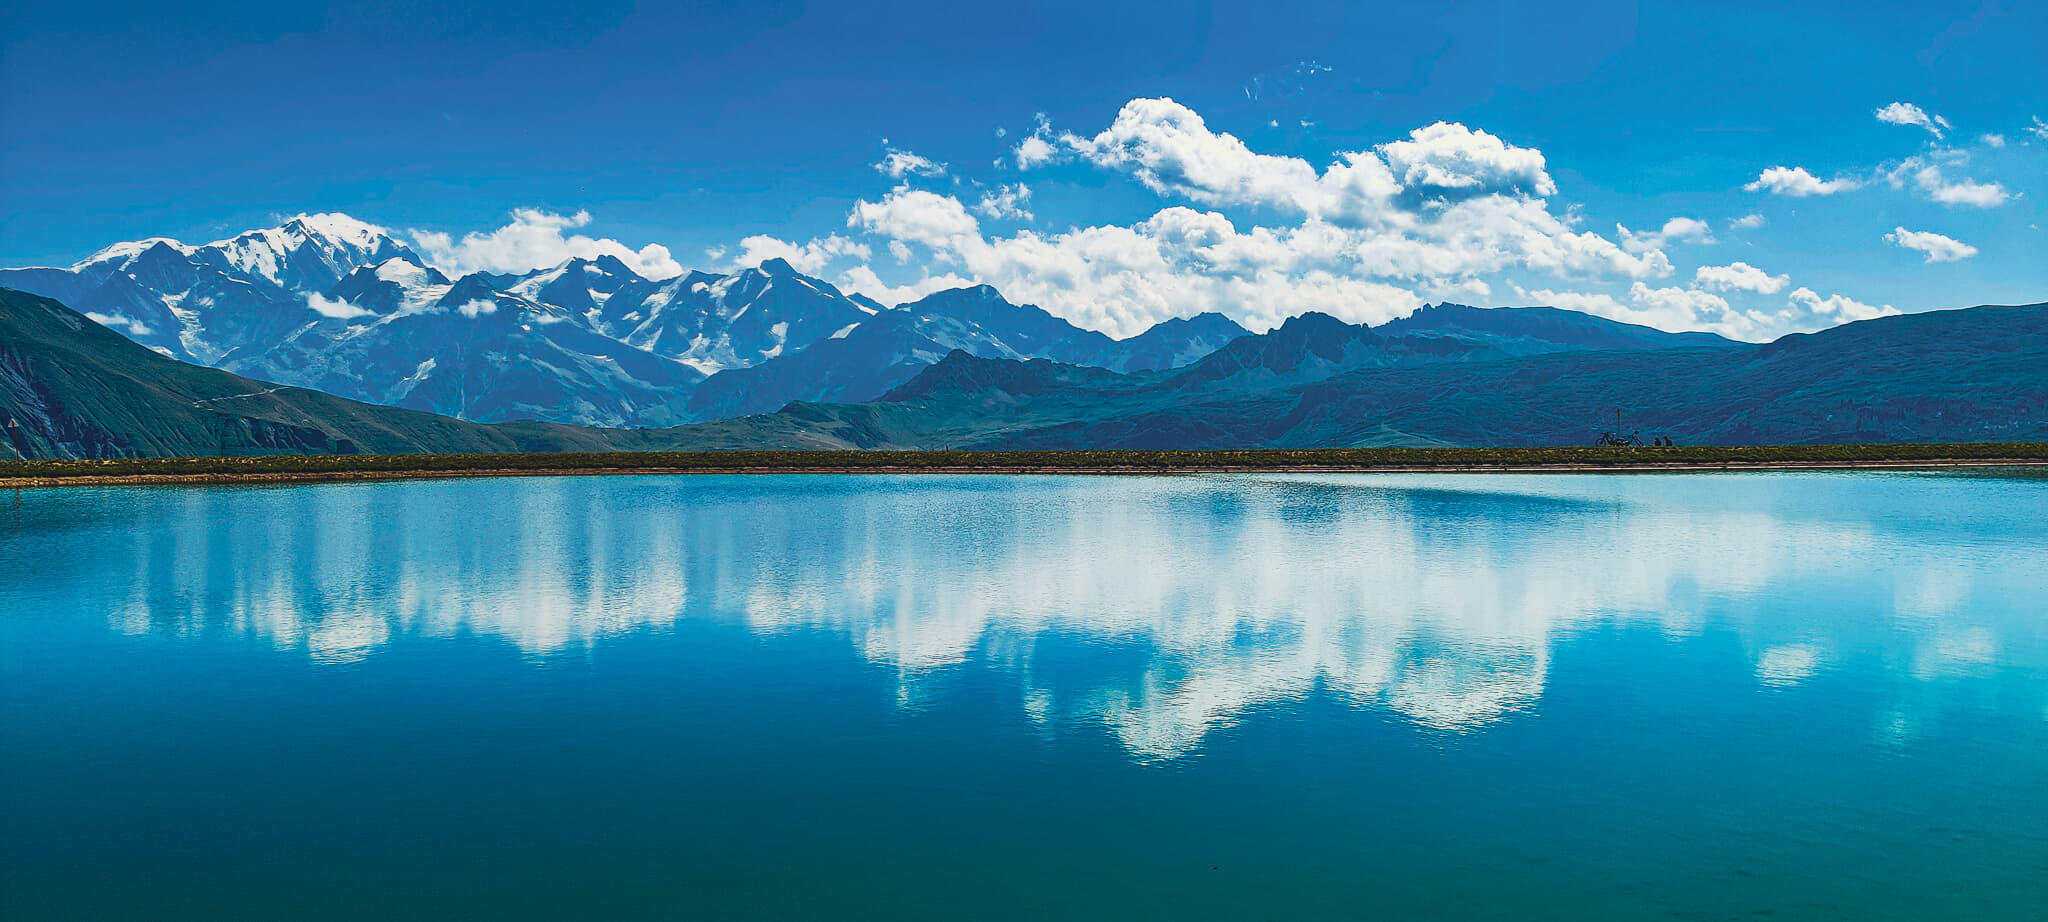 Le Mont Blanc se reflétant dans un lac d'altitude